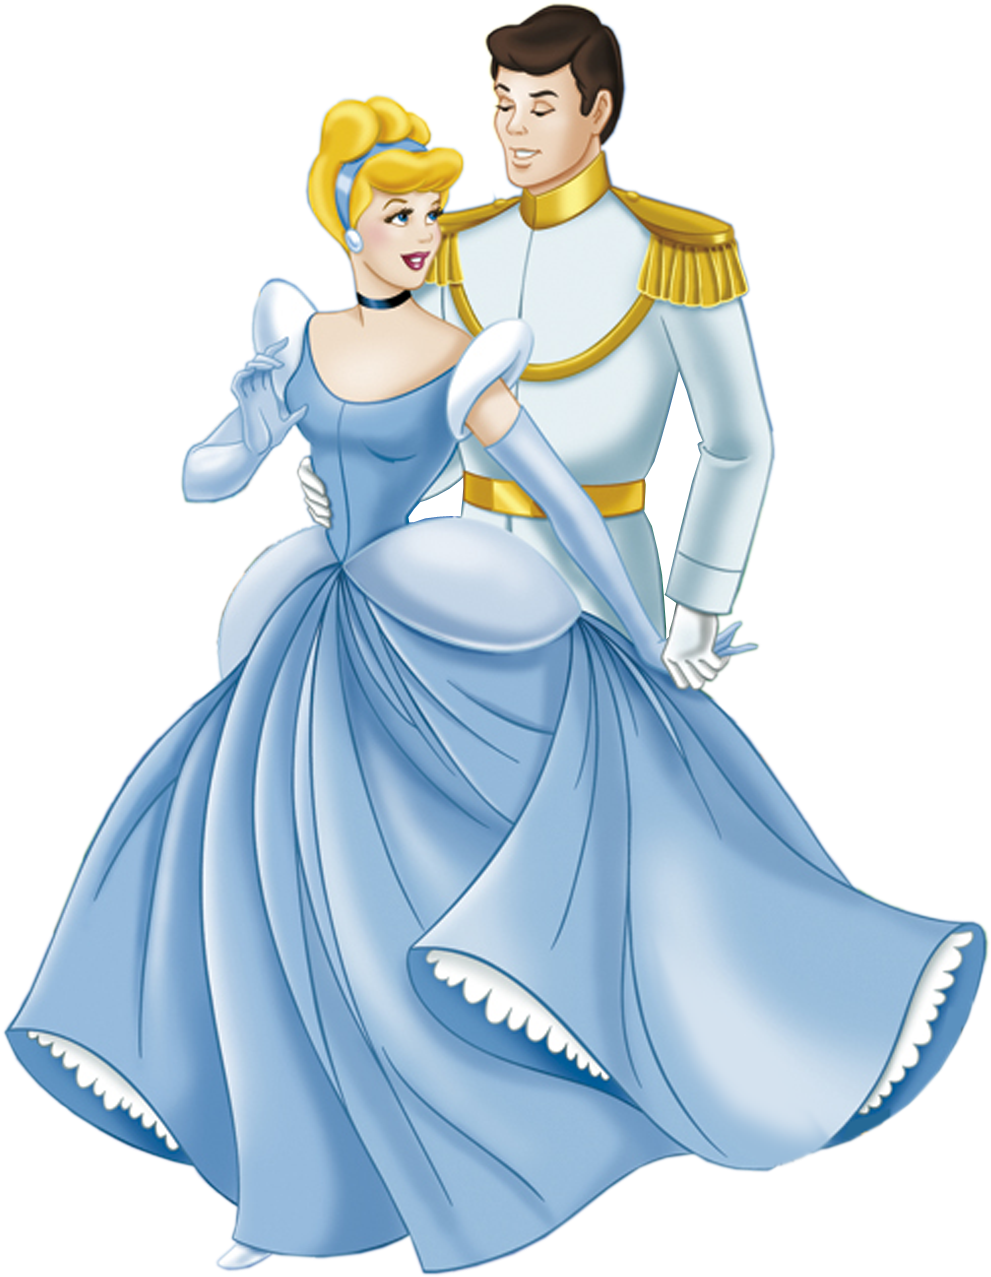 Cinderella And Prince Charming - Cinderella And Prince Charming (1301x1417)